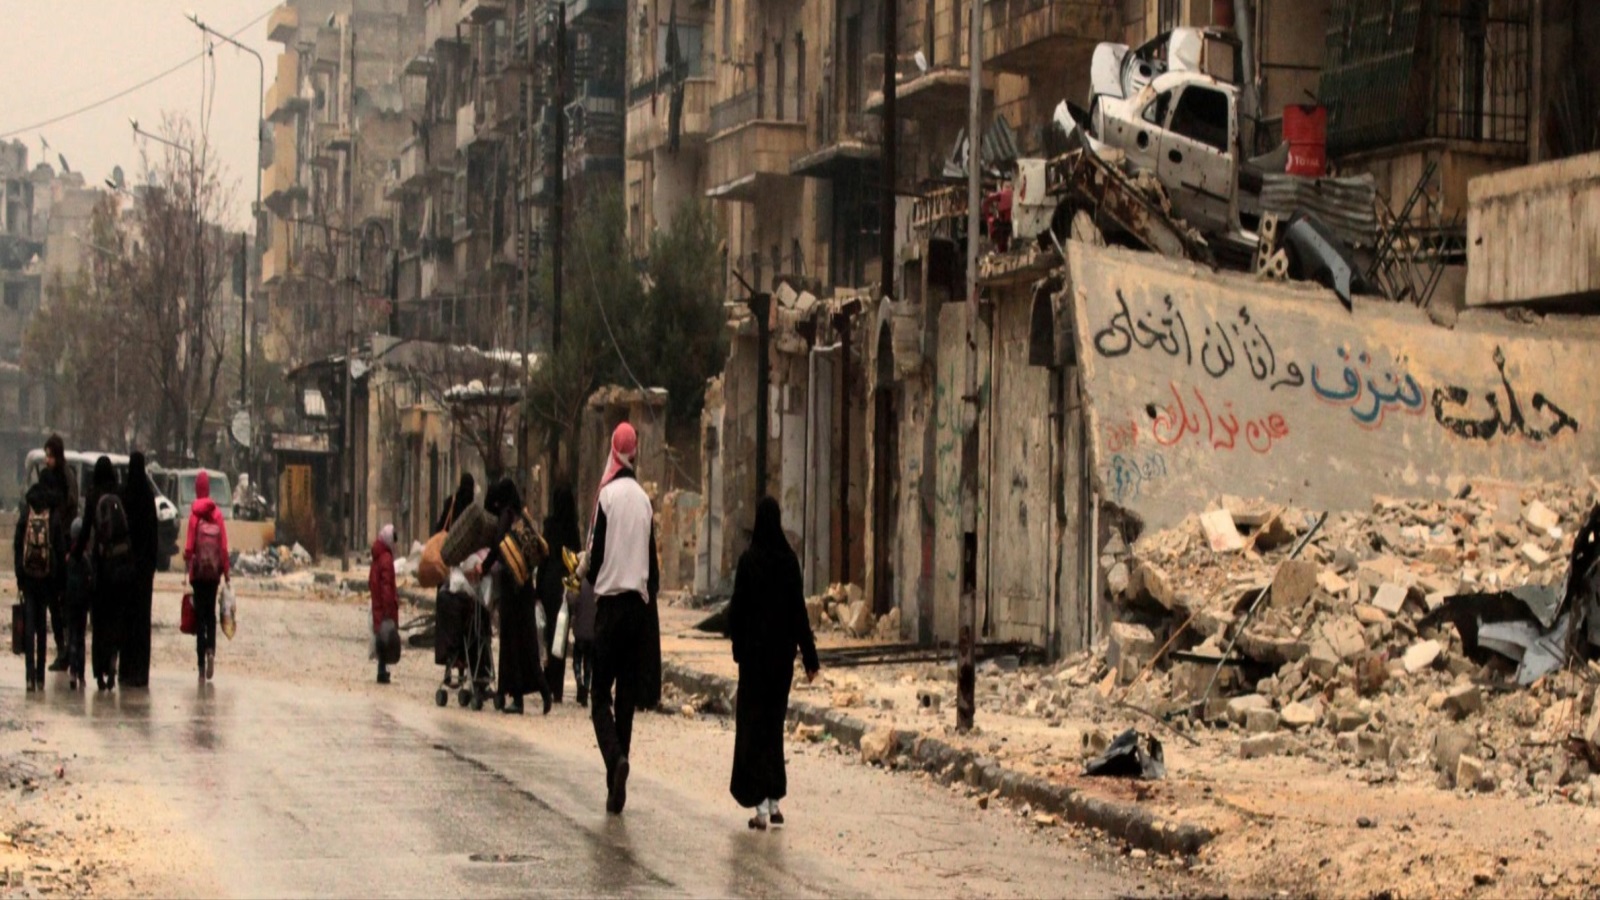 معركة إدلب مستمرة الآن، وموجة النزوح أشد مما كانت عليه في حلب في ديسمبر 2016، ولكن دون تسليط الضوء. بعض التقارير تتحدث عما يزيد عن 100 ألف نازح للشمال السوري